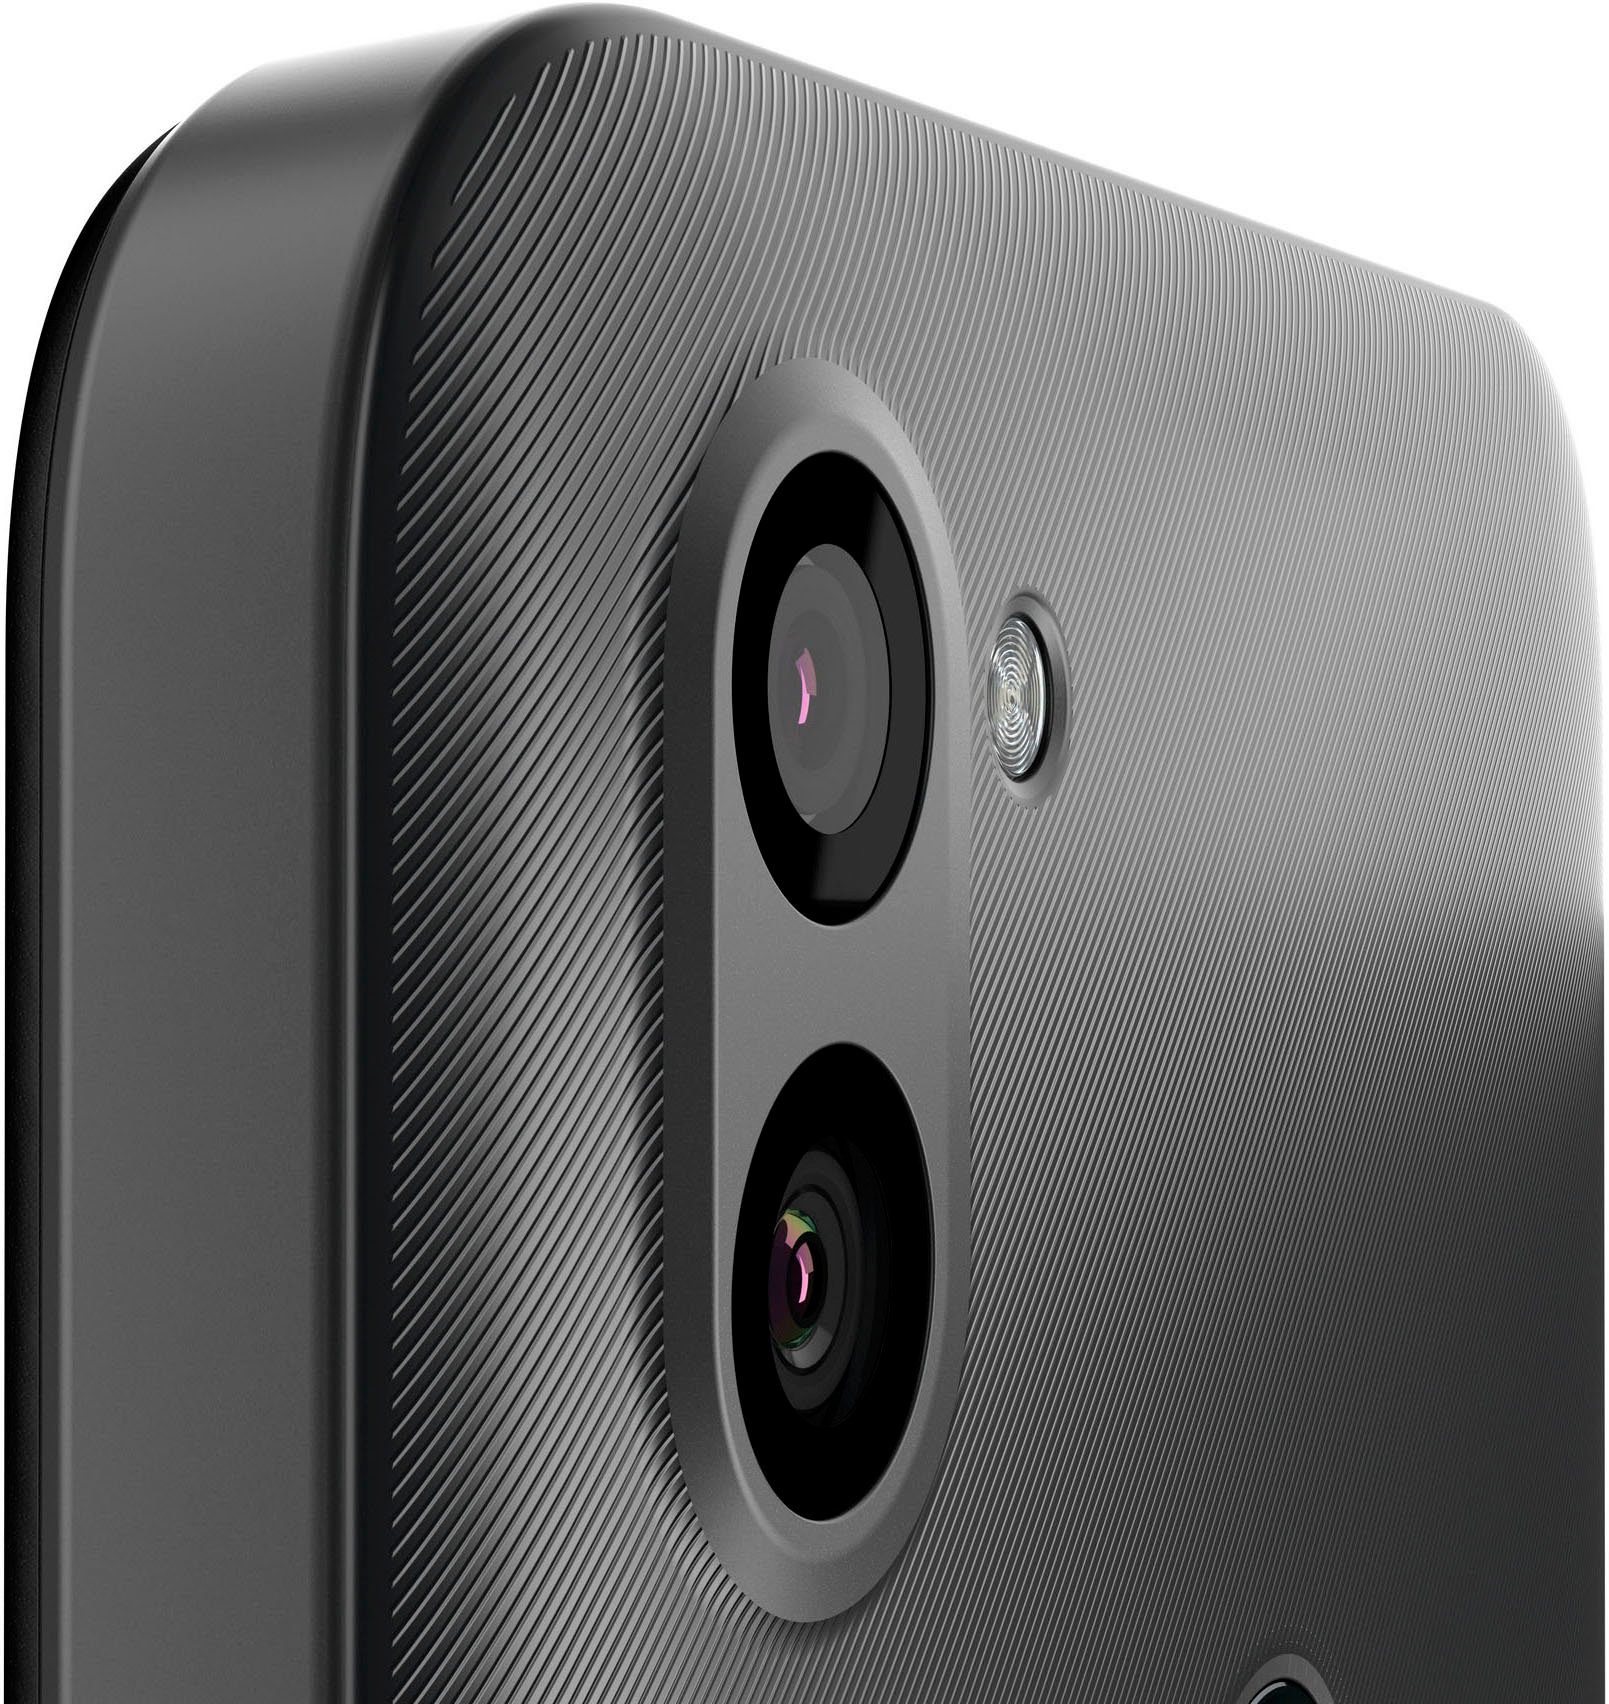 MP Kamera) GB GS5 LITE Smartphone Dark 48 (16 64 Titanium Gigaset Grey cm/6,3 Zoll, Speicherplatz,